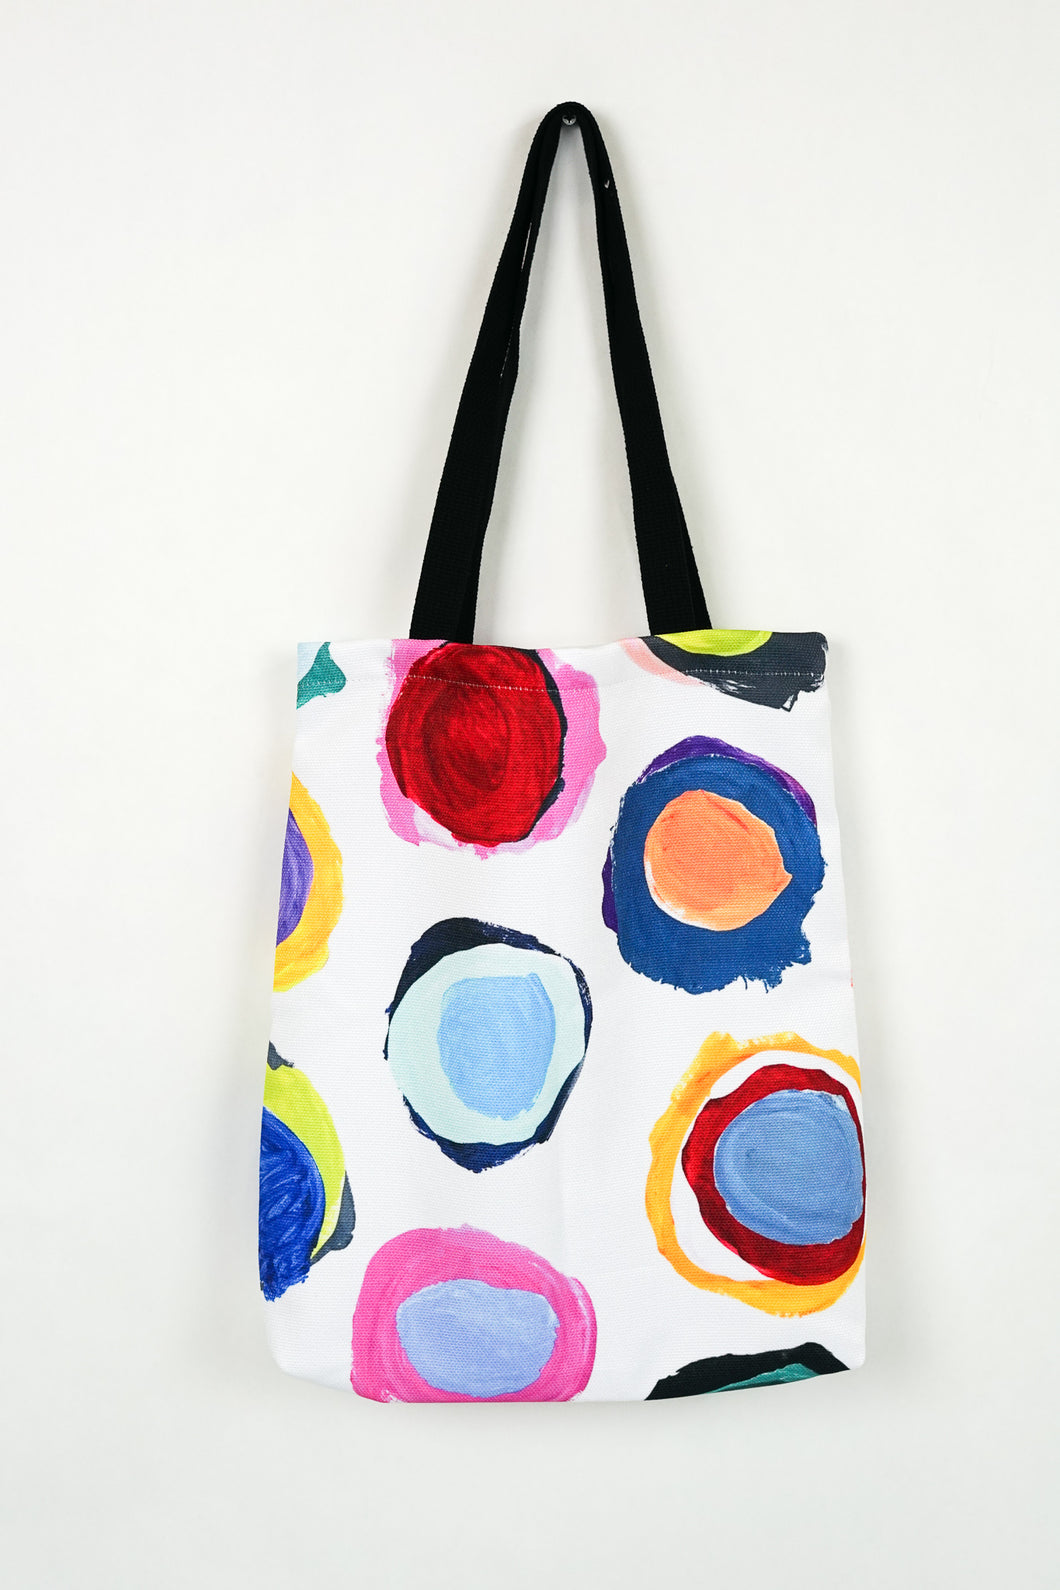 Tote Bag by Monika Woody